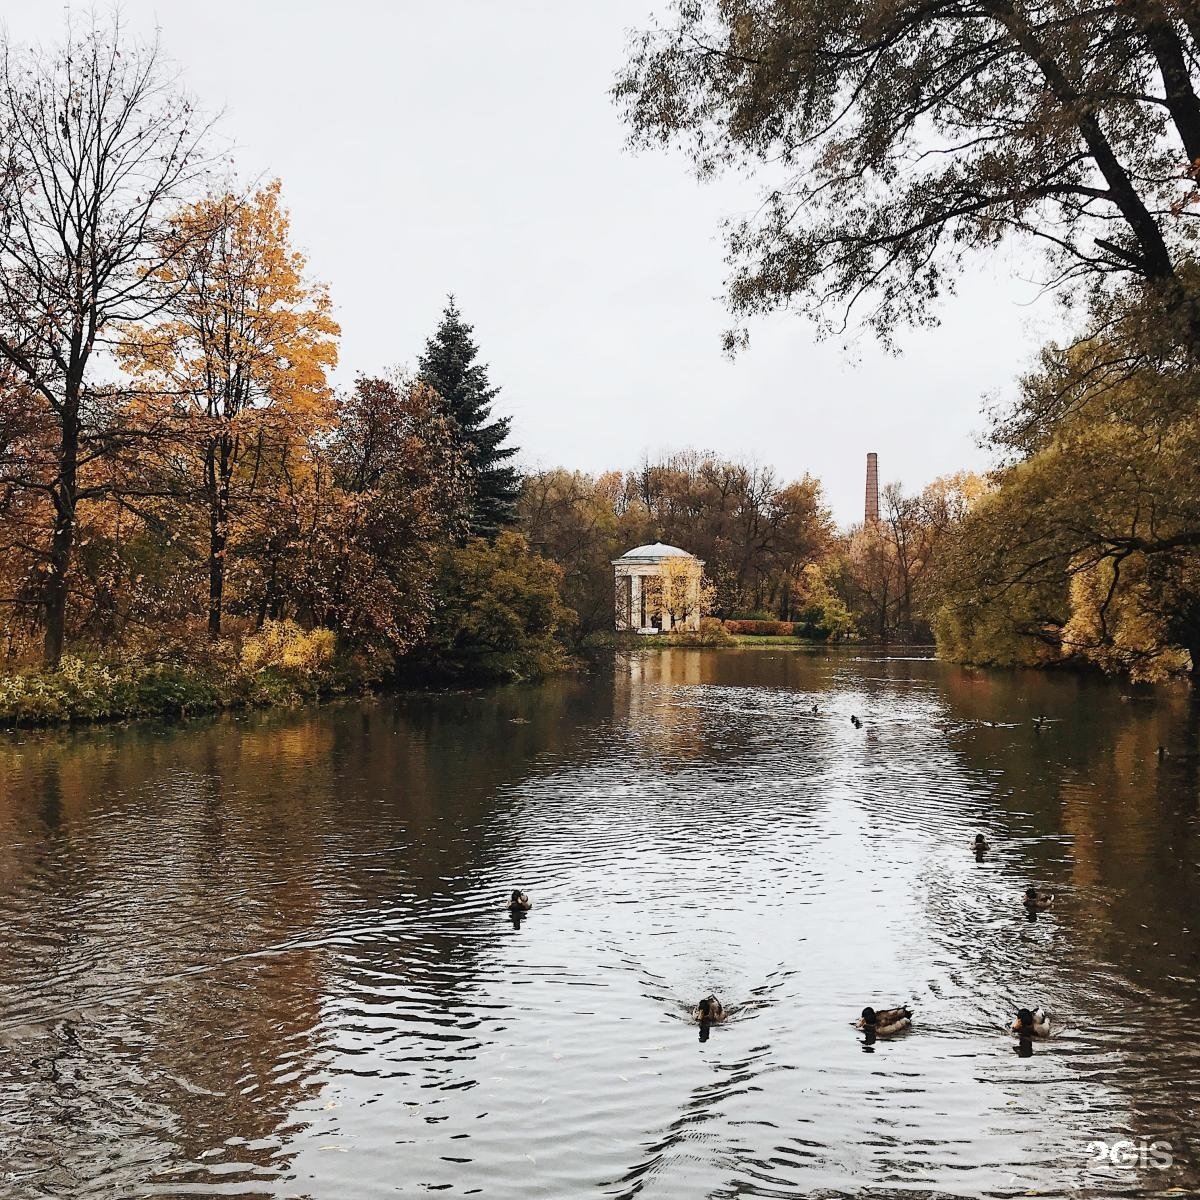 Екатерингофский парк в Санкт-Петербурге